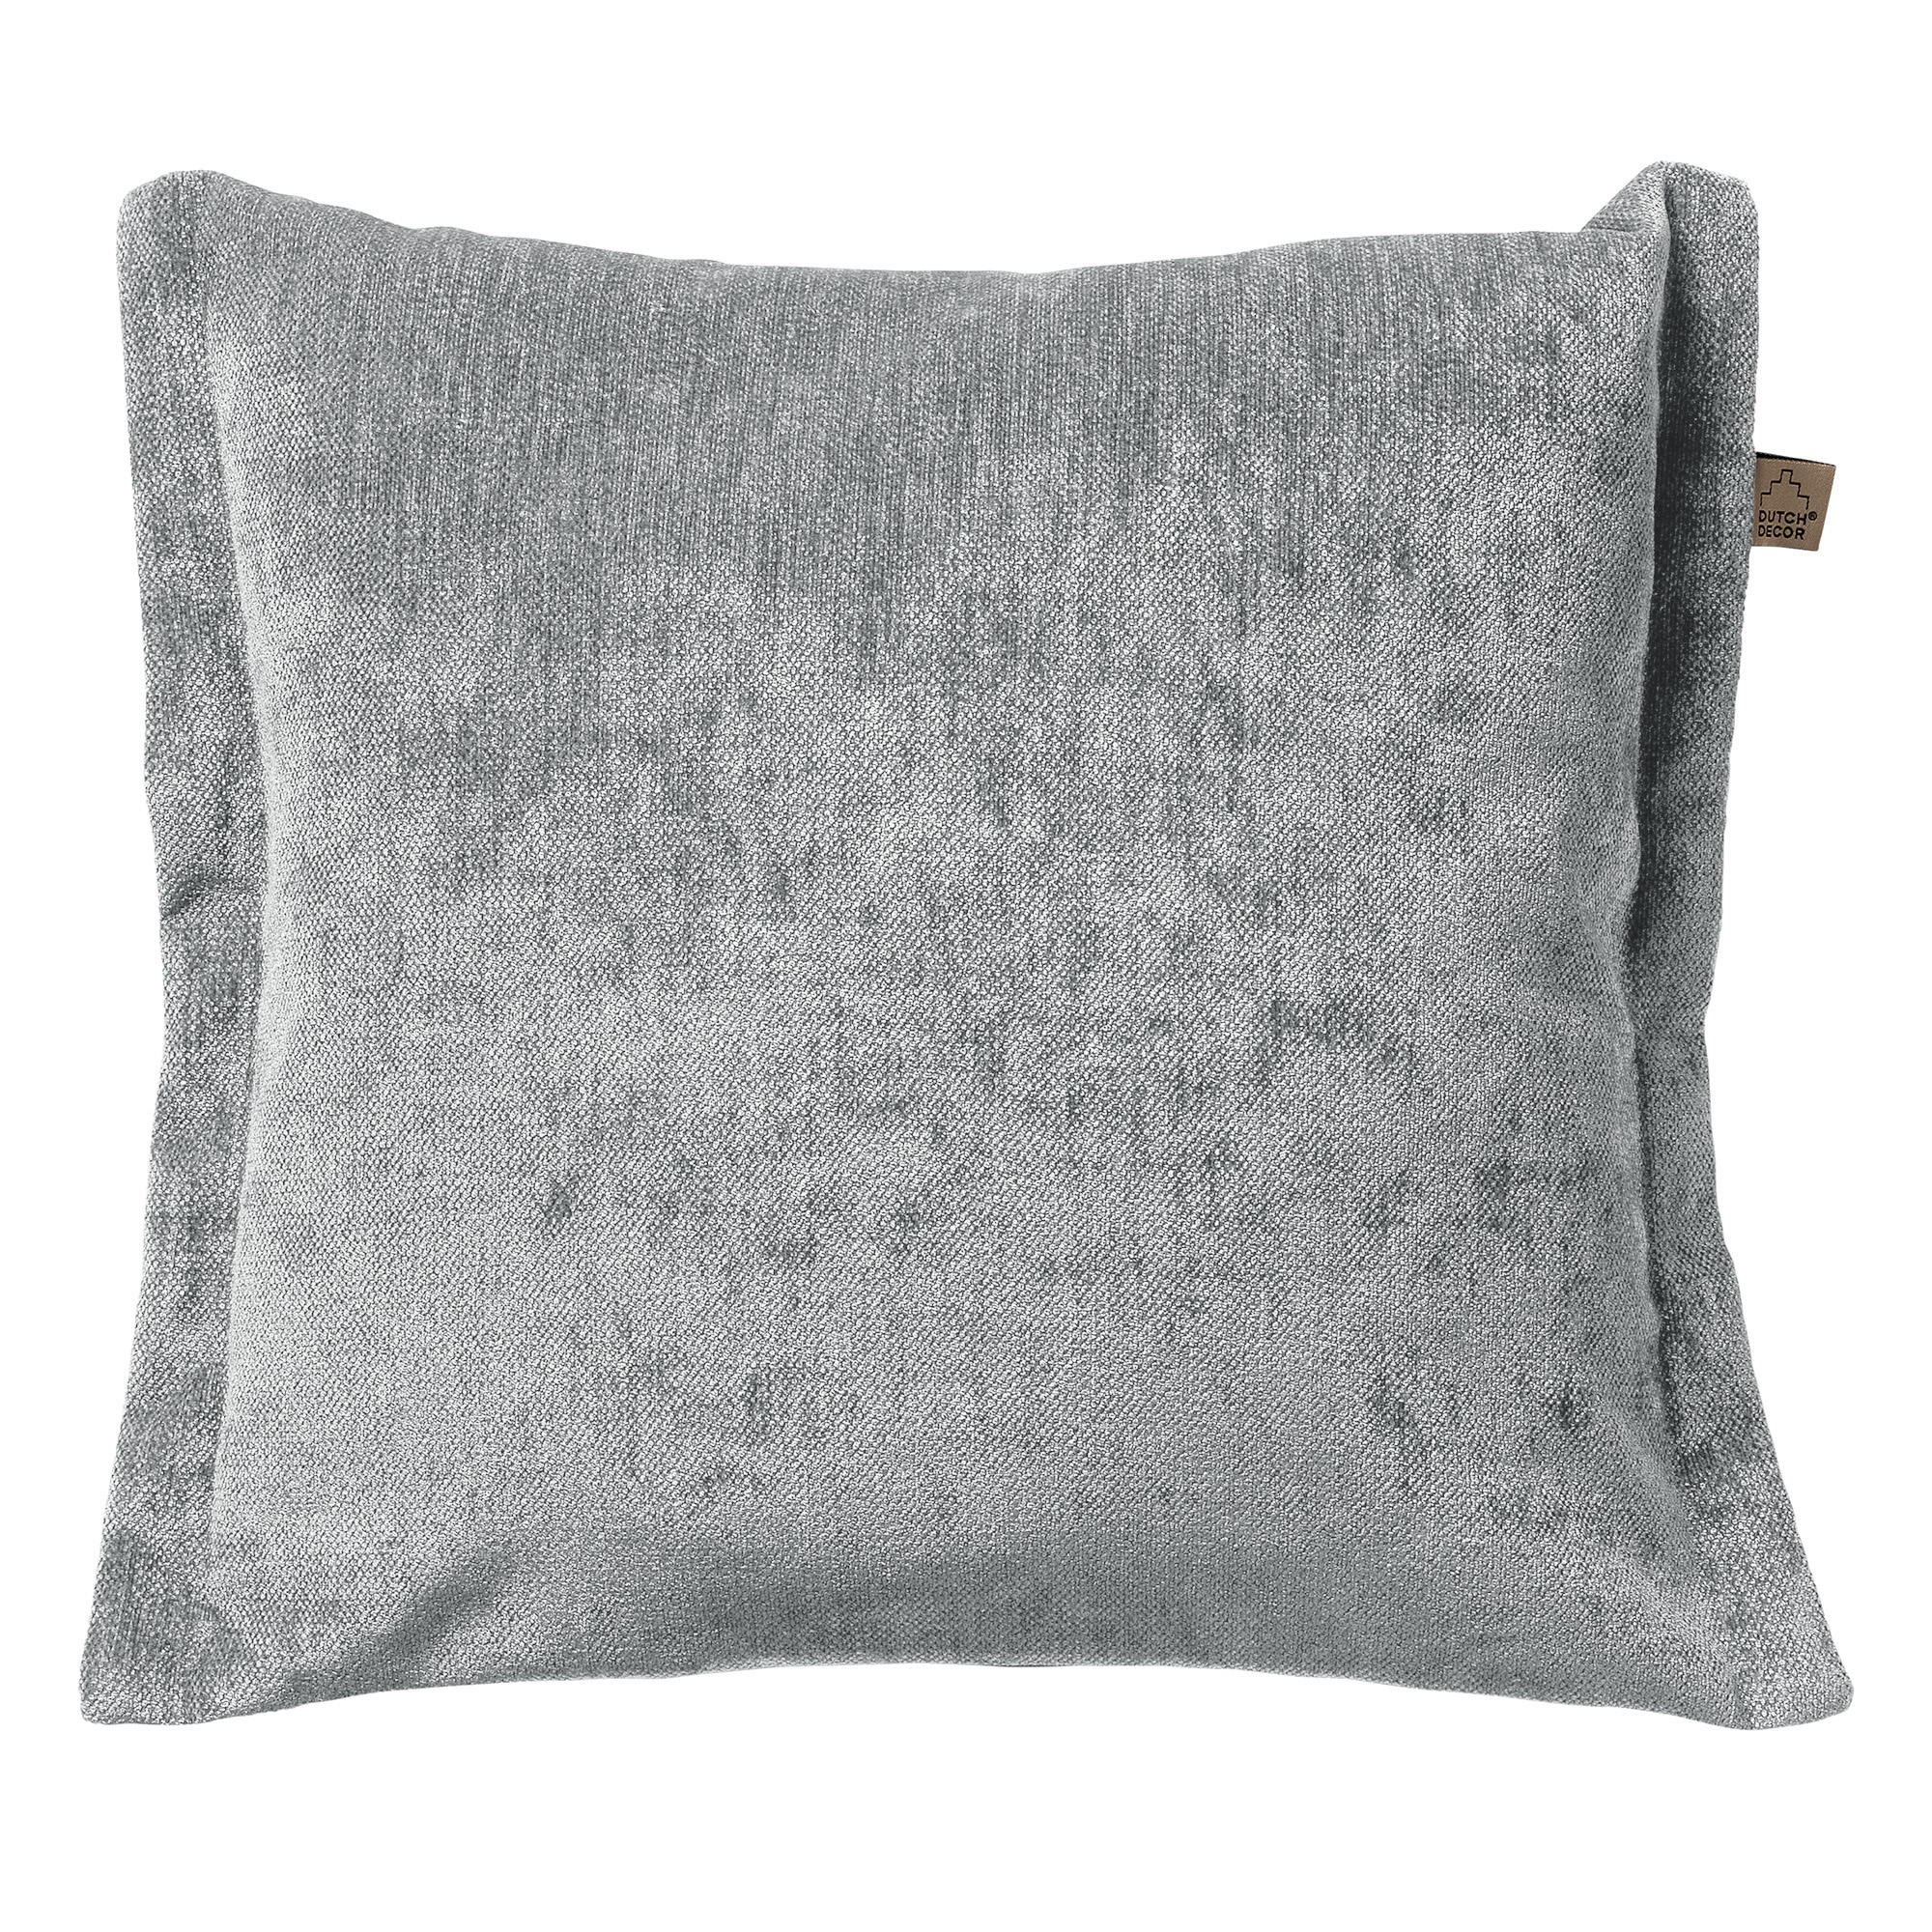 LEWIS - Cushion 45x45 cm - Micro Chip - grey